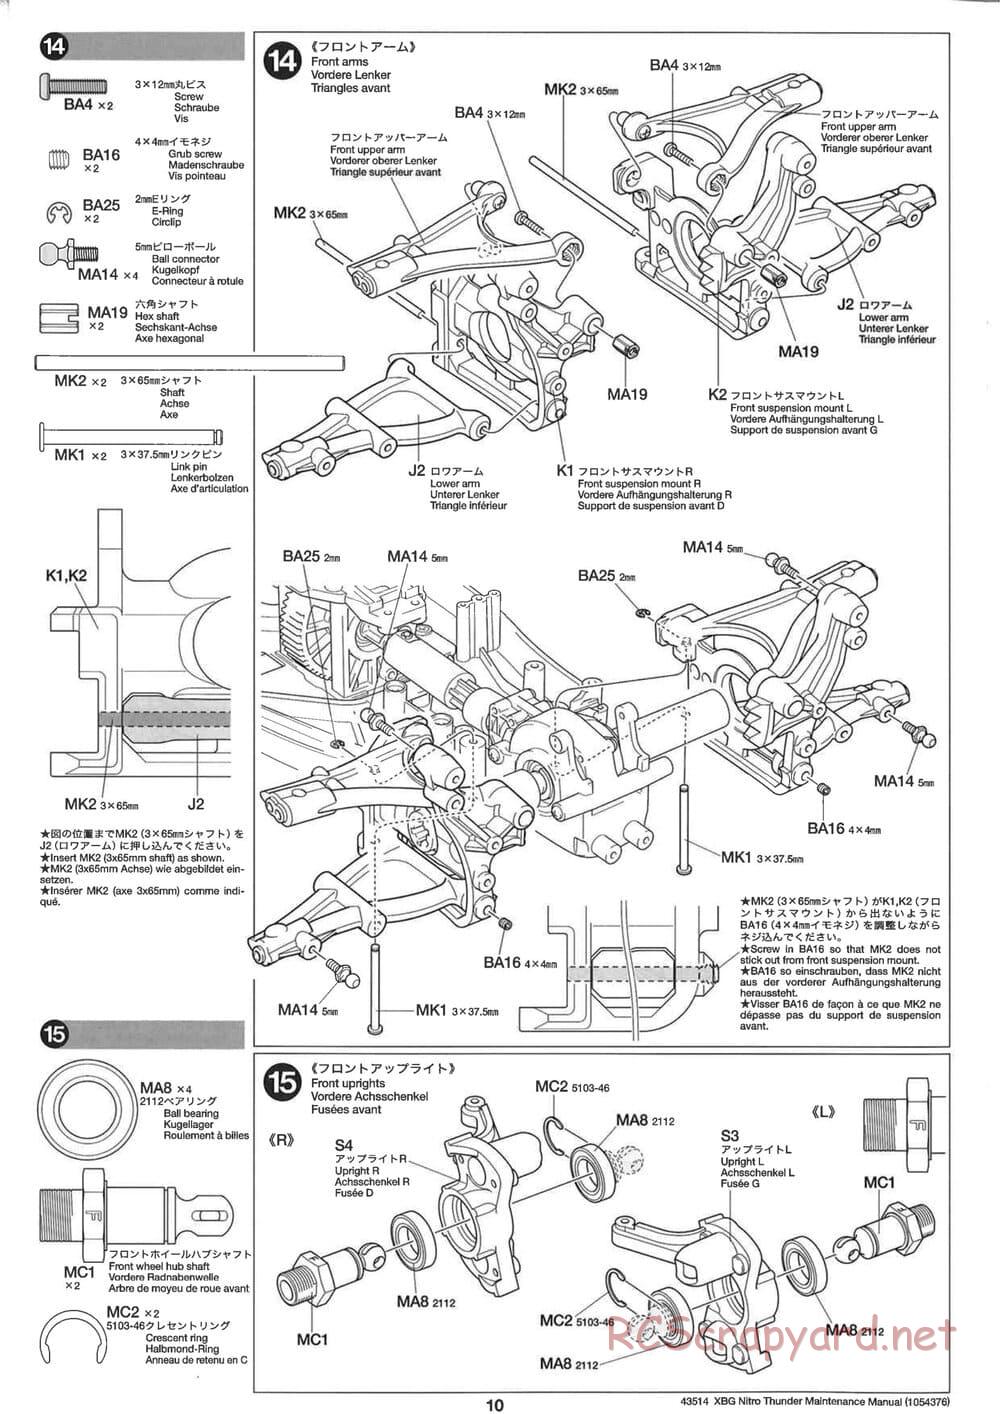 Tamiya - Nitro Thunder - NDF-01 Chassis - Manual - Page 10